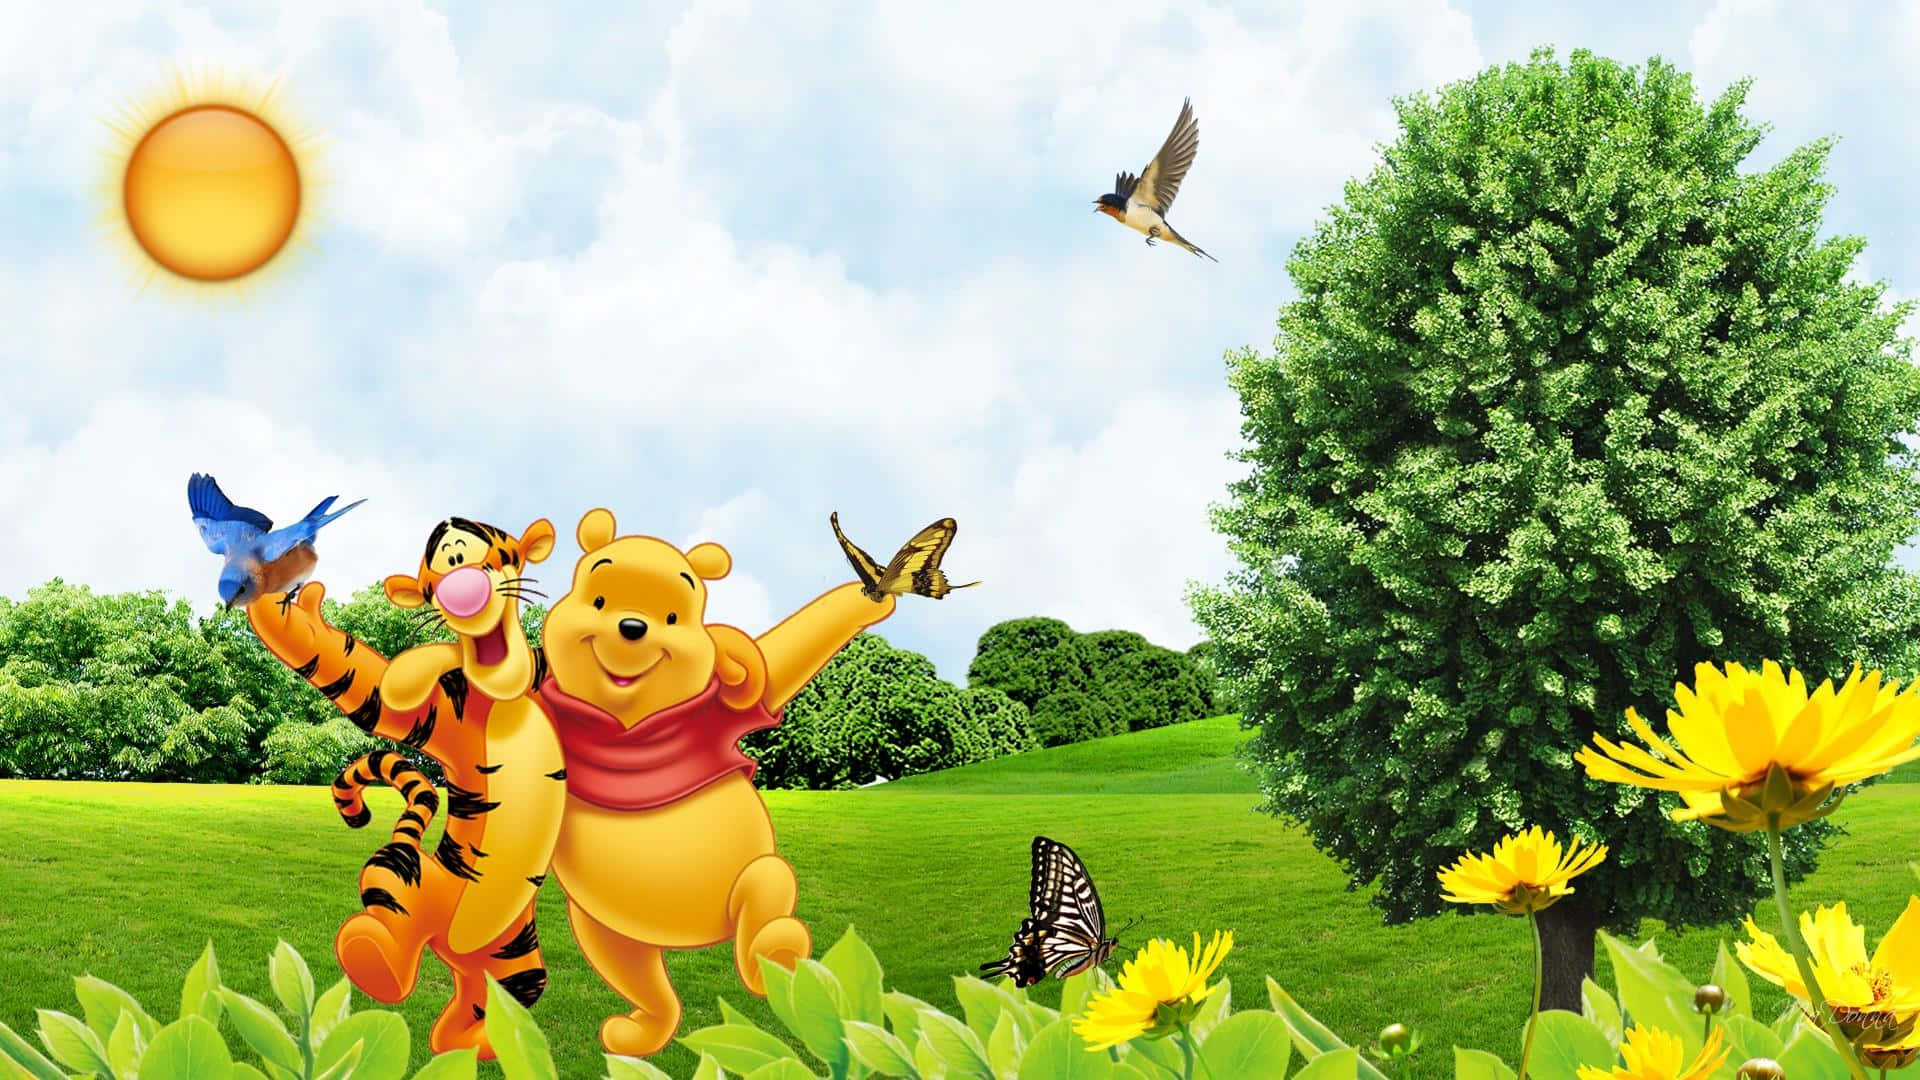 Winnie the Pooh og tiger i græsset